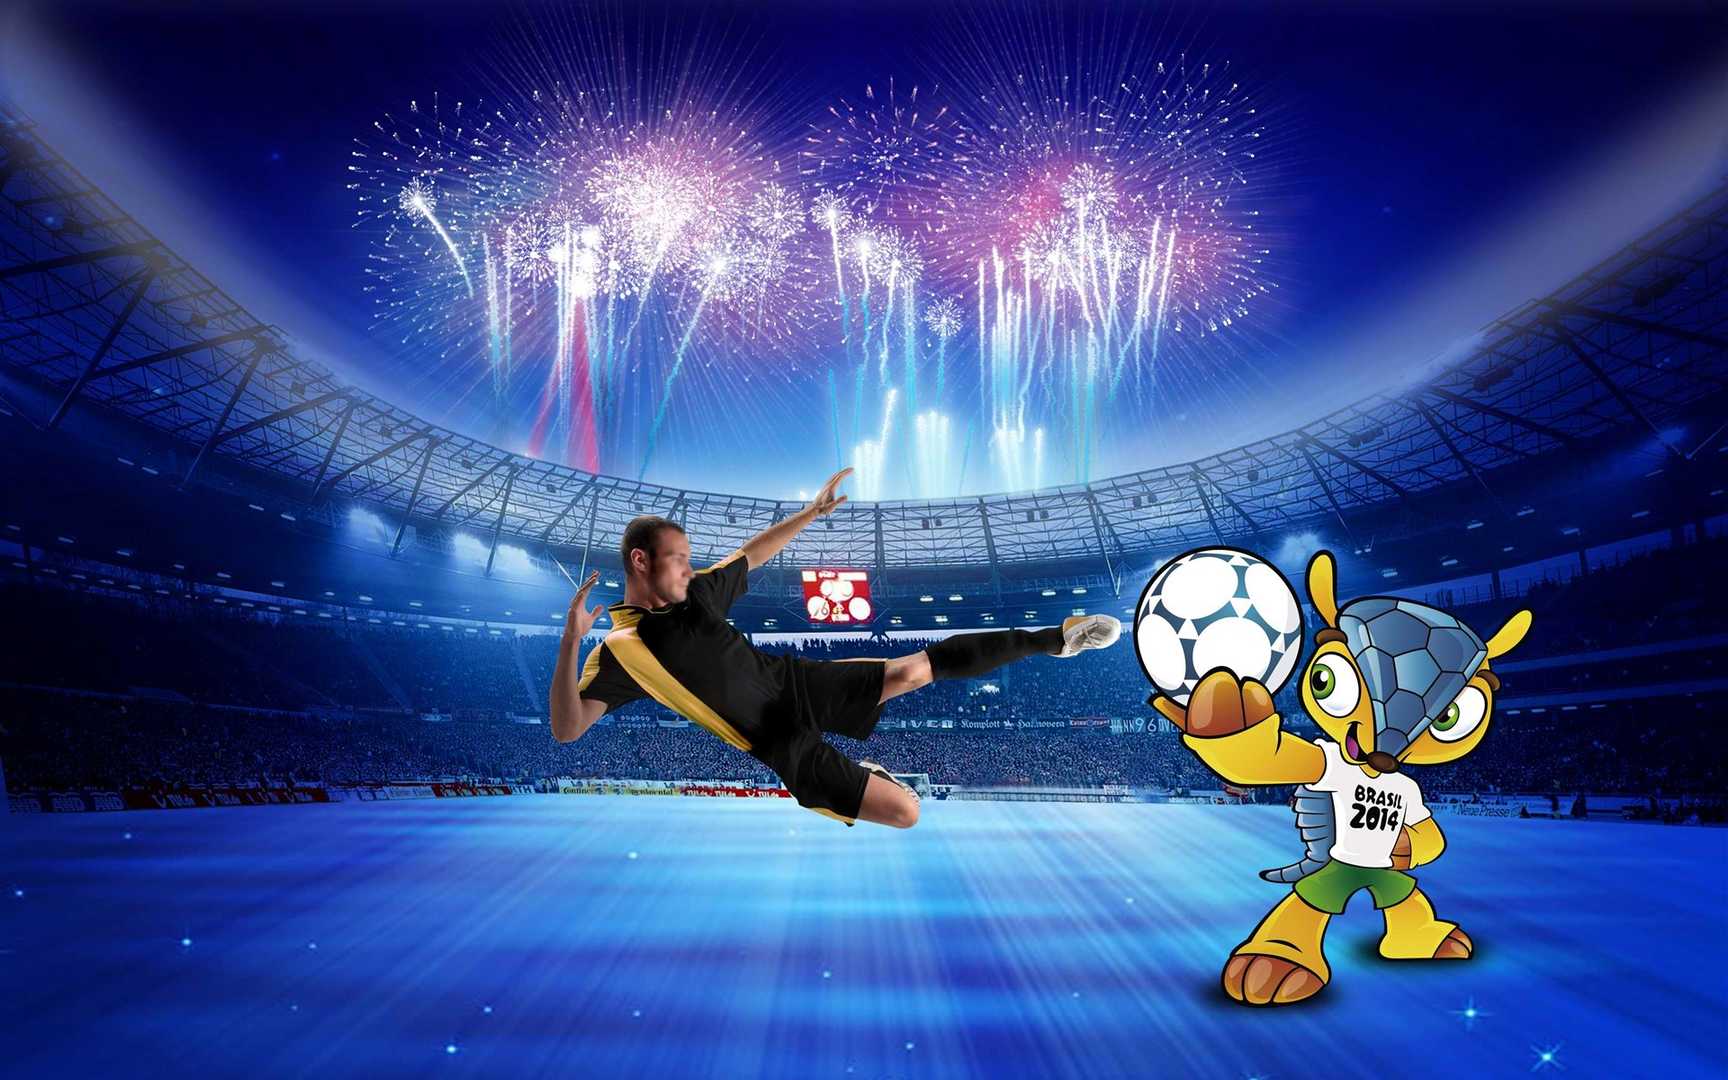 2014巴西世界杯吉祥物图片